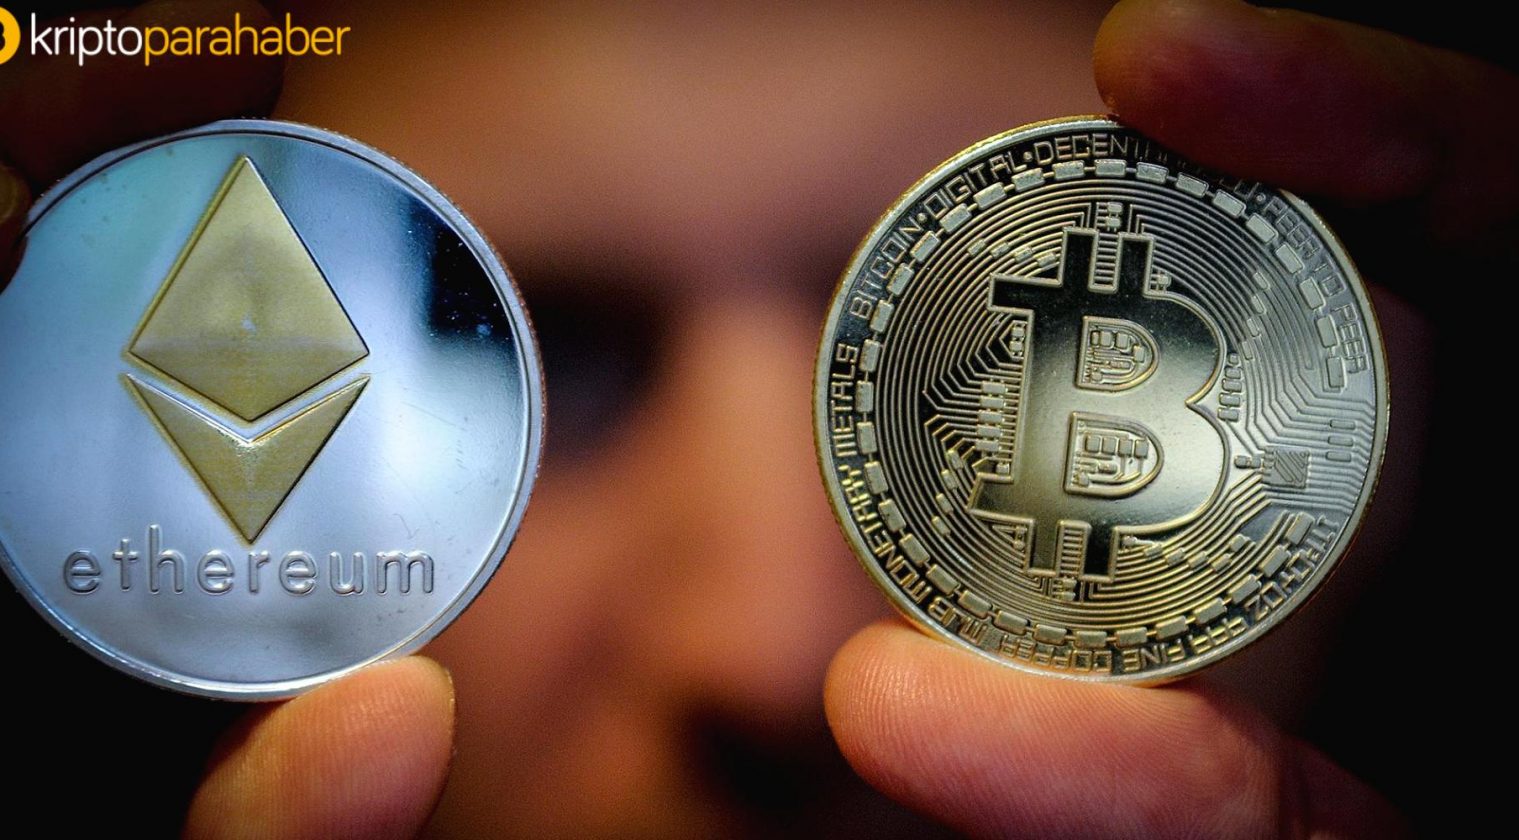 Kripto tarihinde bir ilk: Ethereum Bitcoin’i geçti!